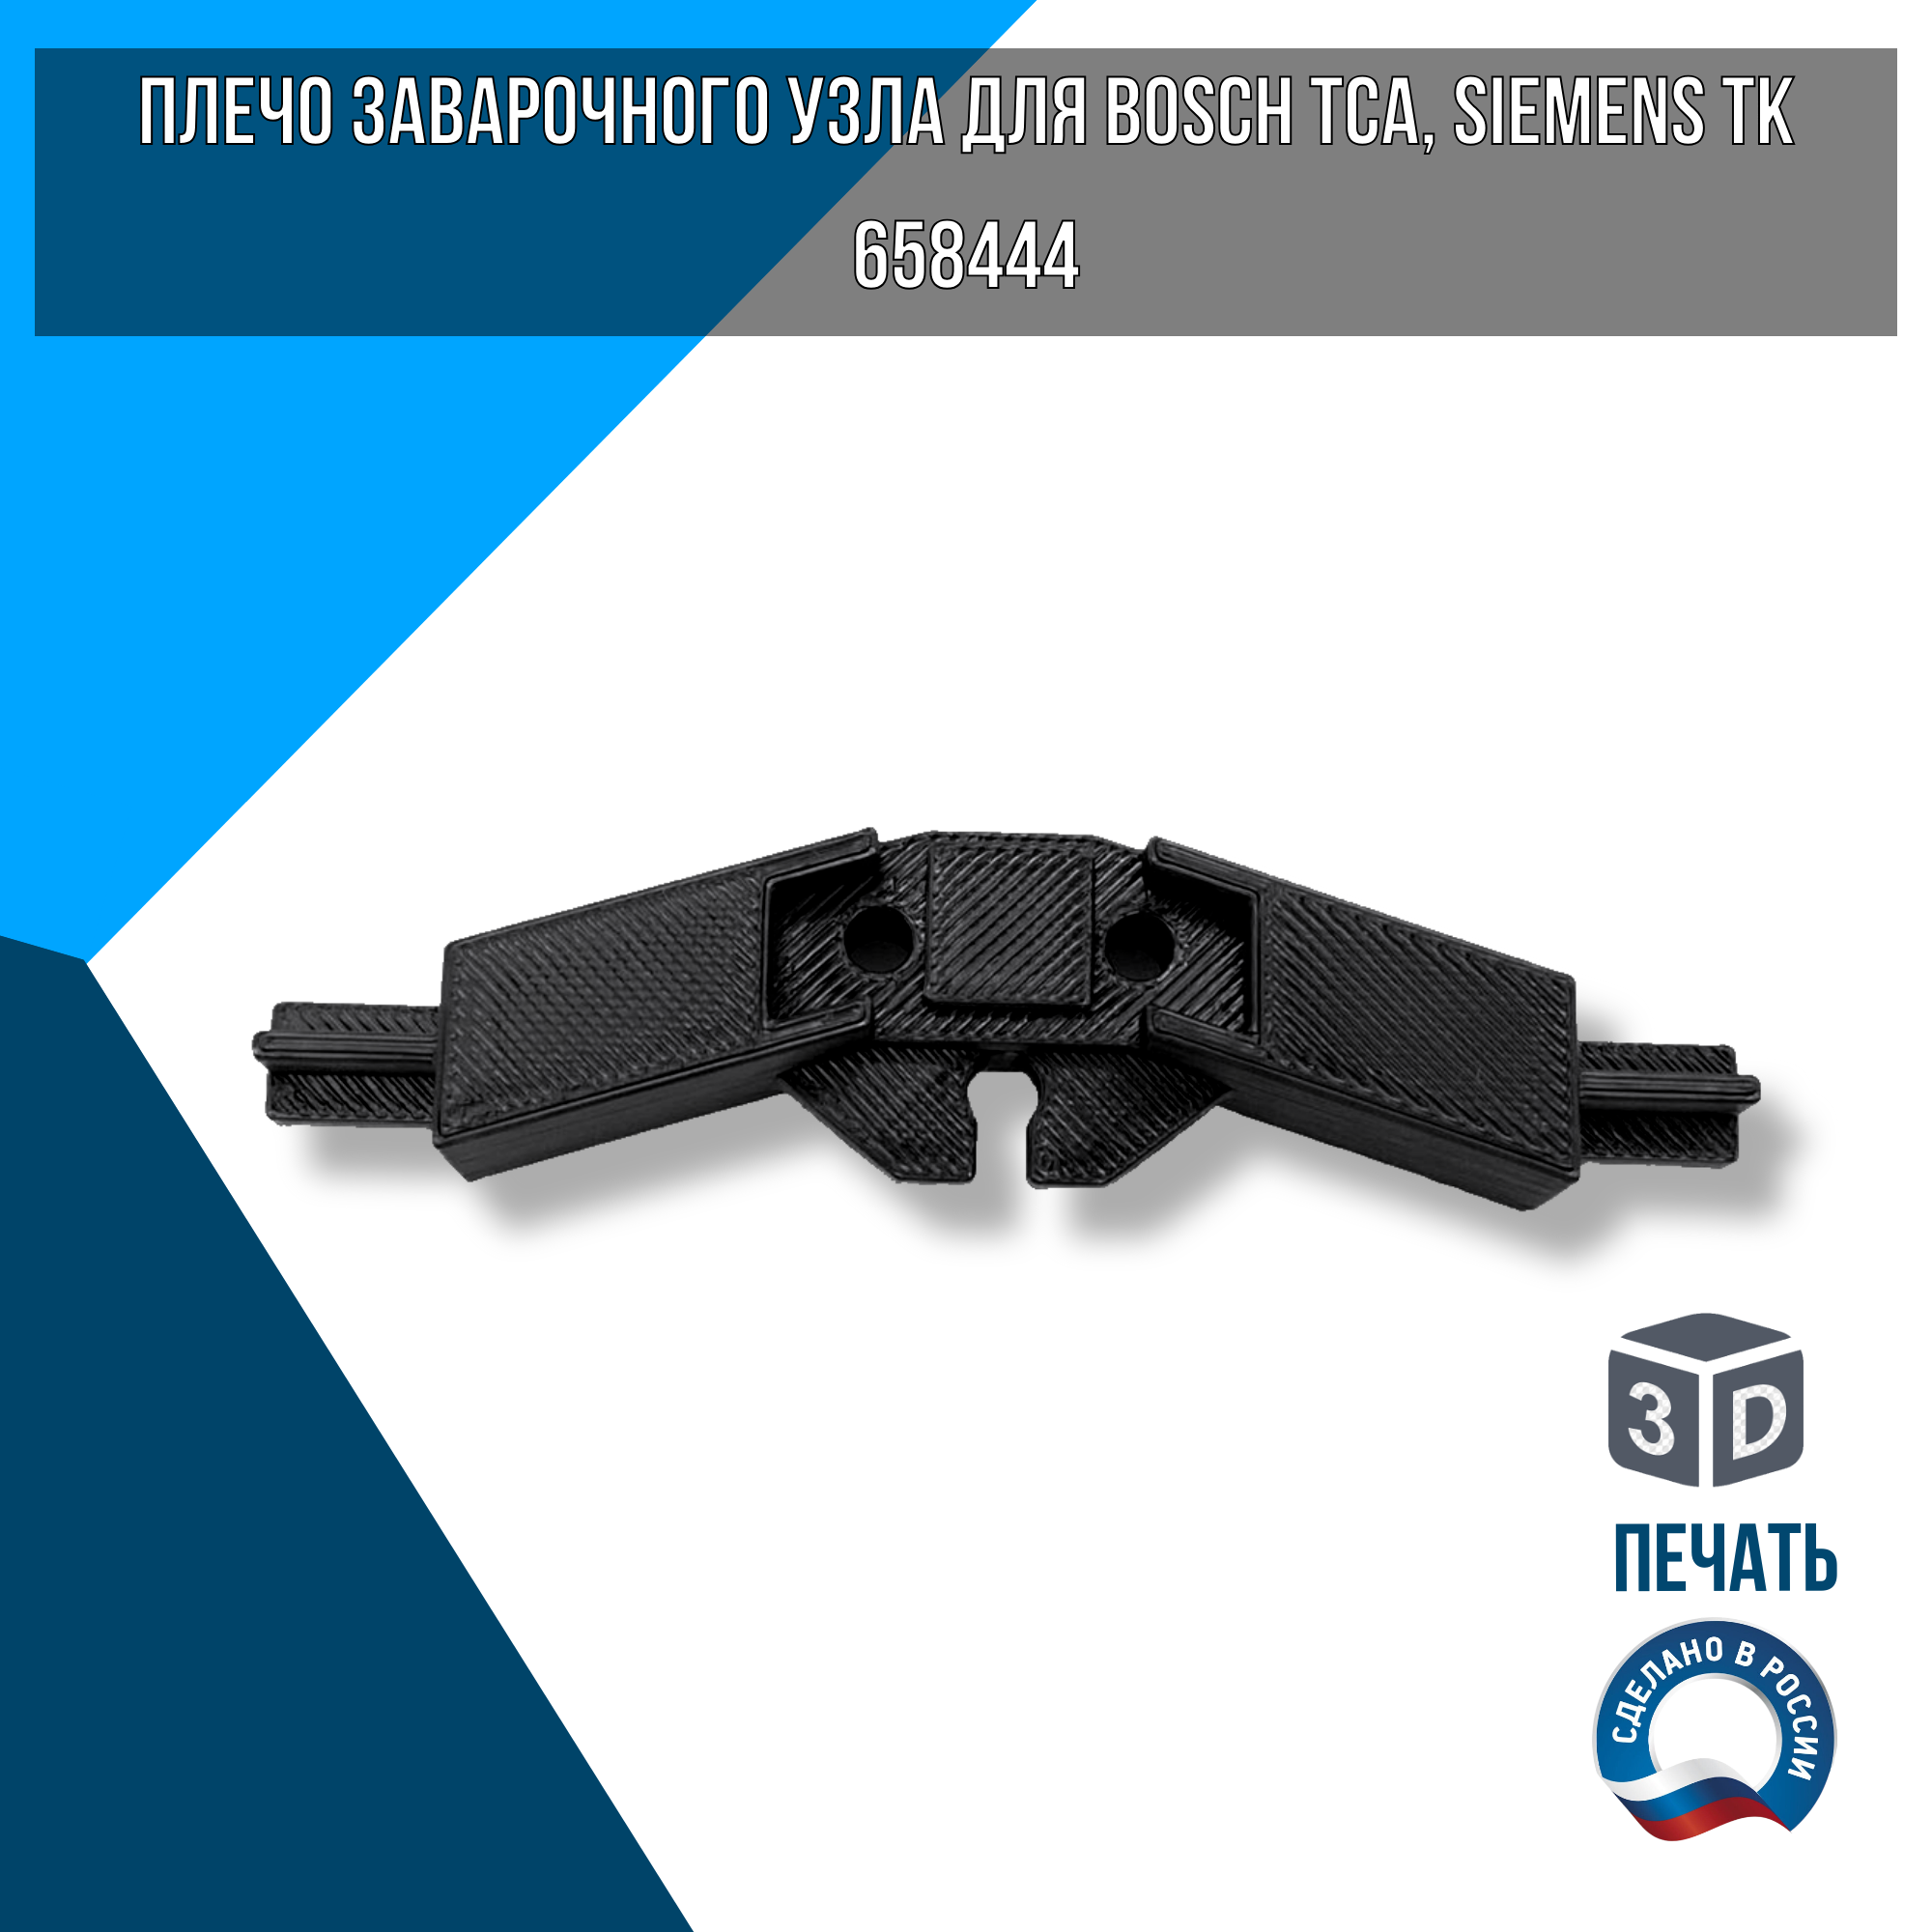 Плечо заварочного узла для Bosch TCA, Siemens TK, 658444